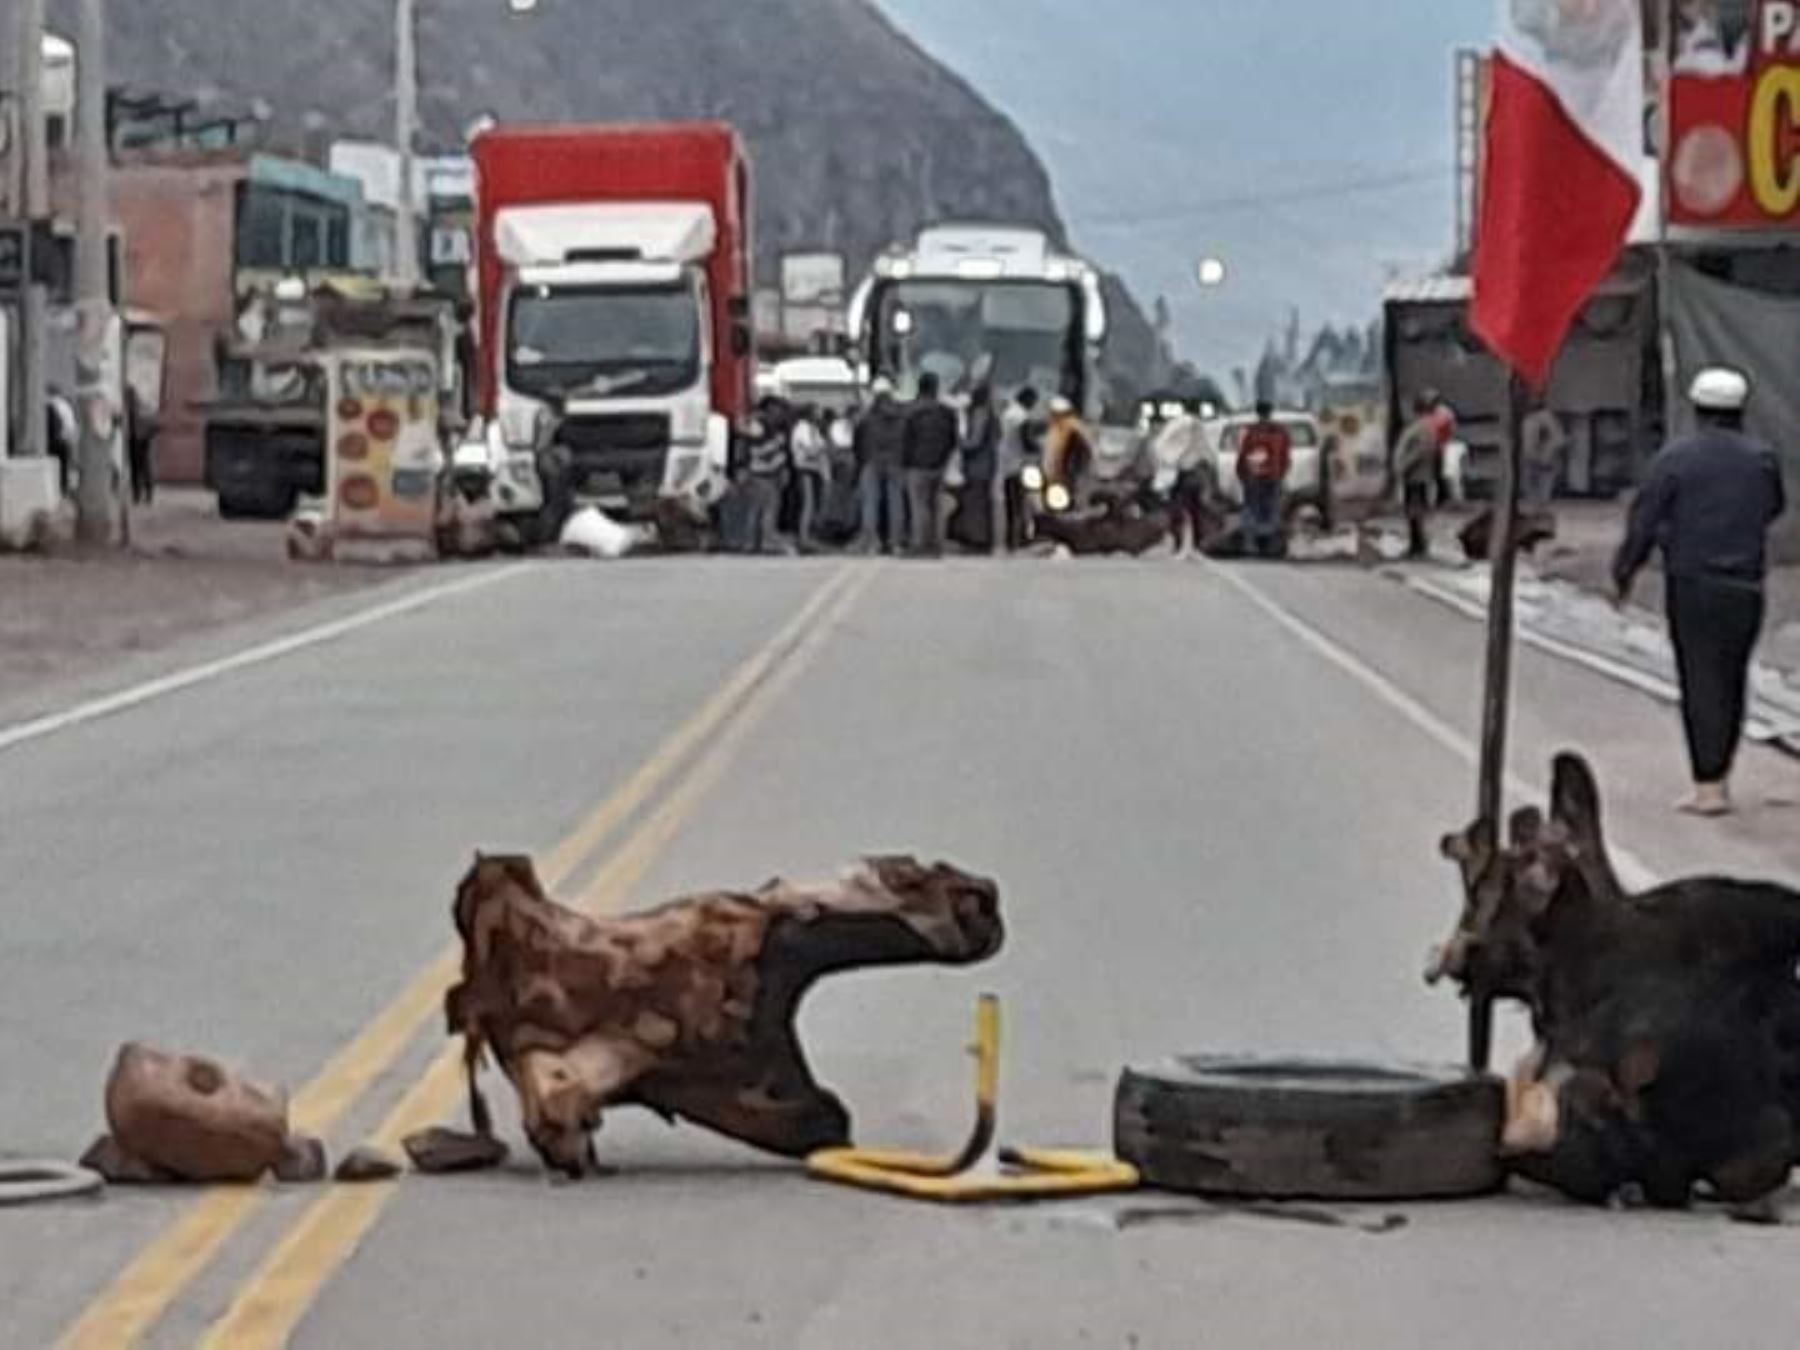 El bloqueo de carreteras que afecta a diversas regiones del país cobró una nueva víctima. Un niño murió en Cusco porque no pudo llegar a tiempo al centro de salud para recibir atención.